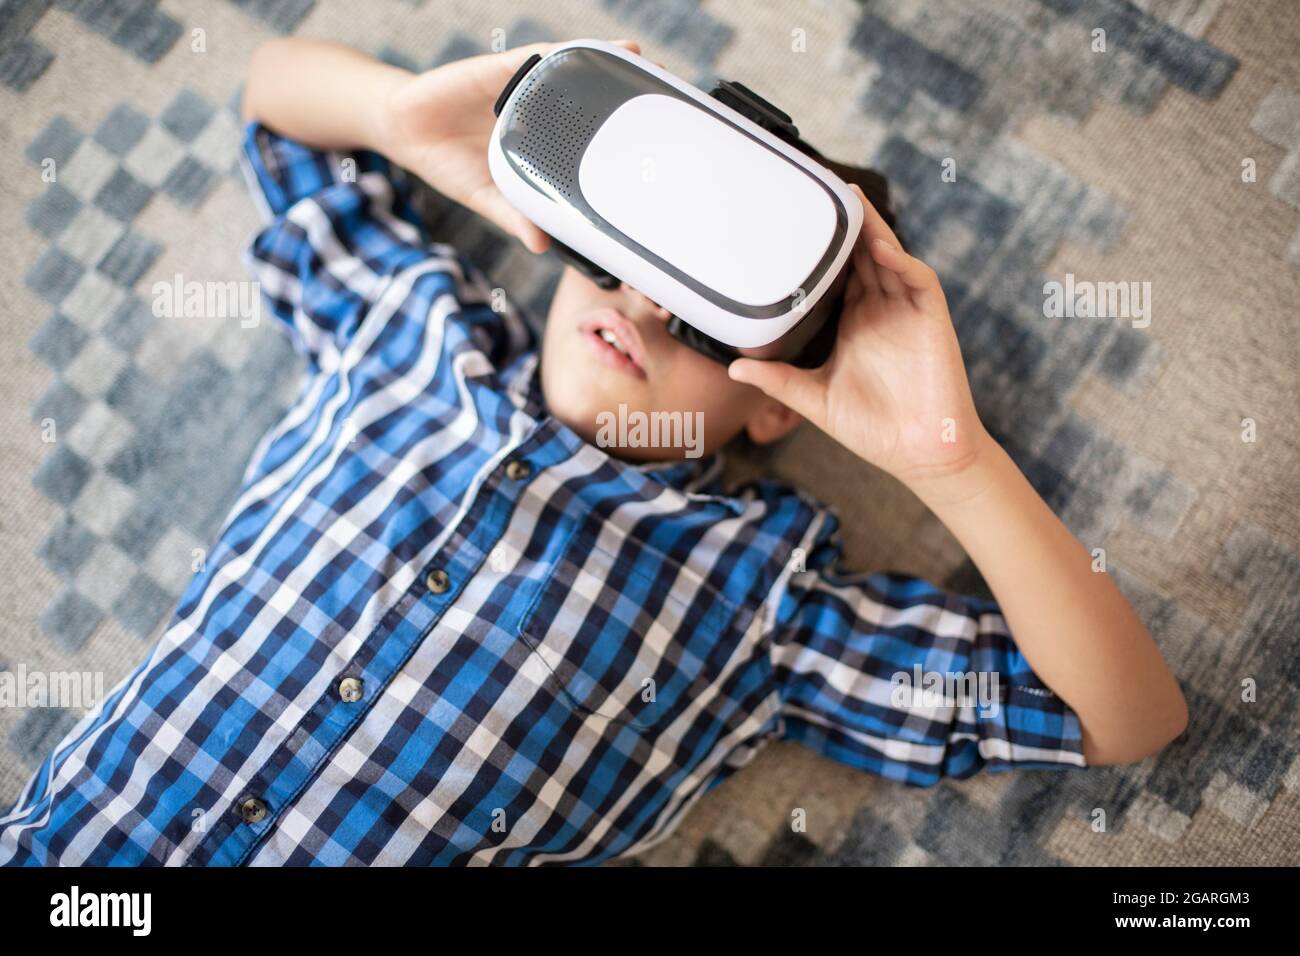 Gros plan d'un adolescent caucasien excité appréciant la réalité virtuelle. Il est allongé sur le tapis. Banque D'Images